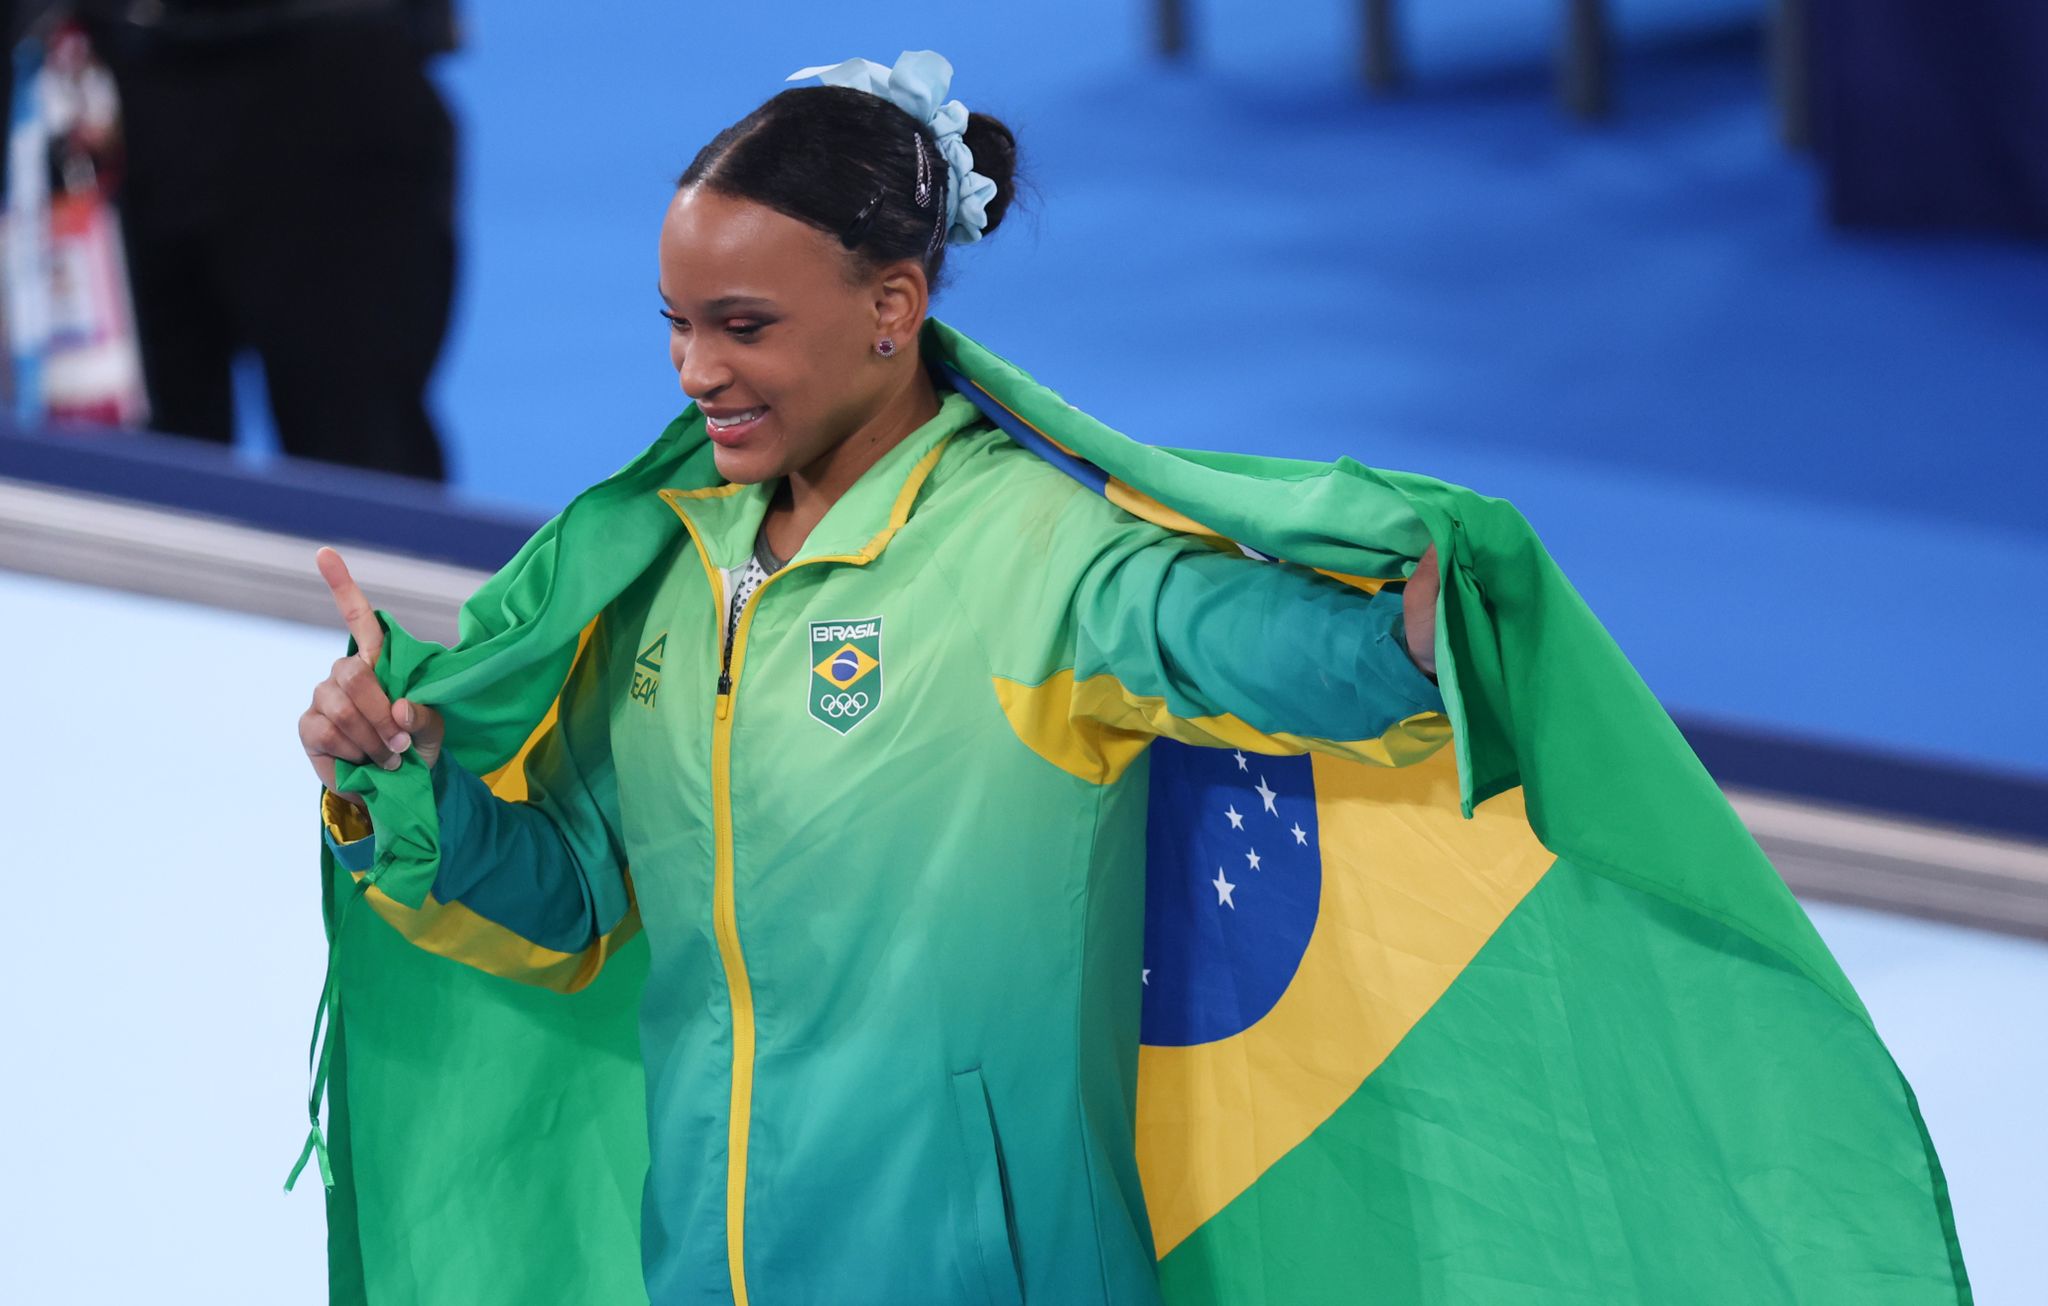 Rebeca Andrade war am ersten Tag der Gerätefinals bei den Kunstturn-Weltmeisterschaften die erfolgreichste Starterin.